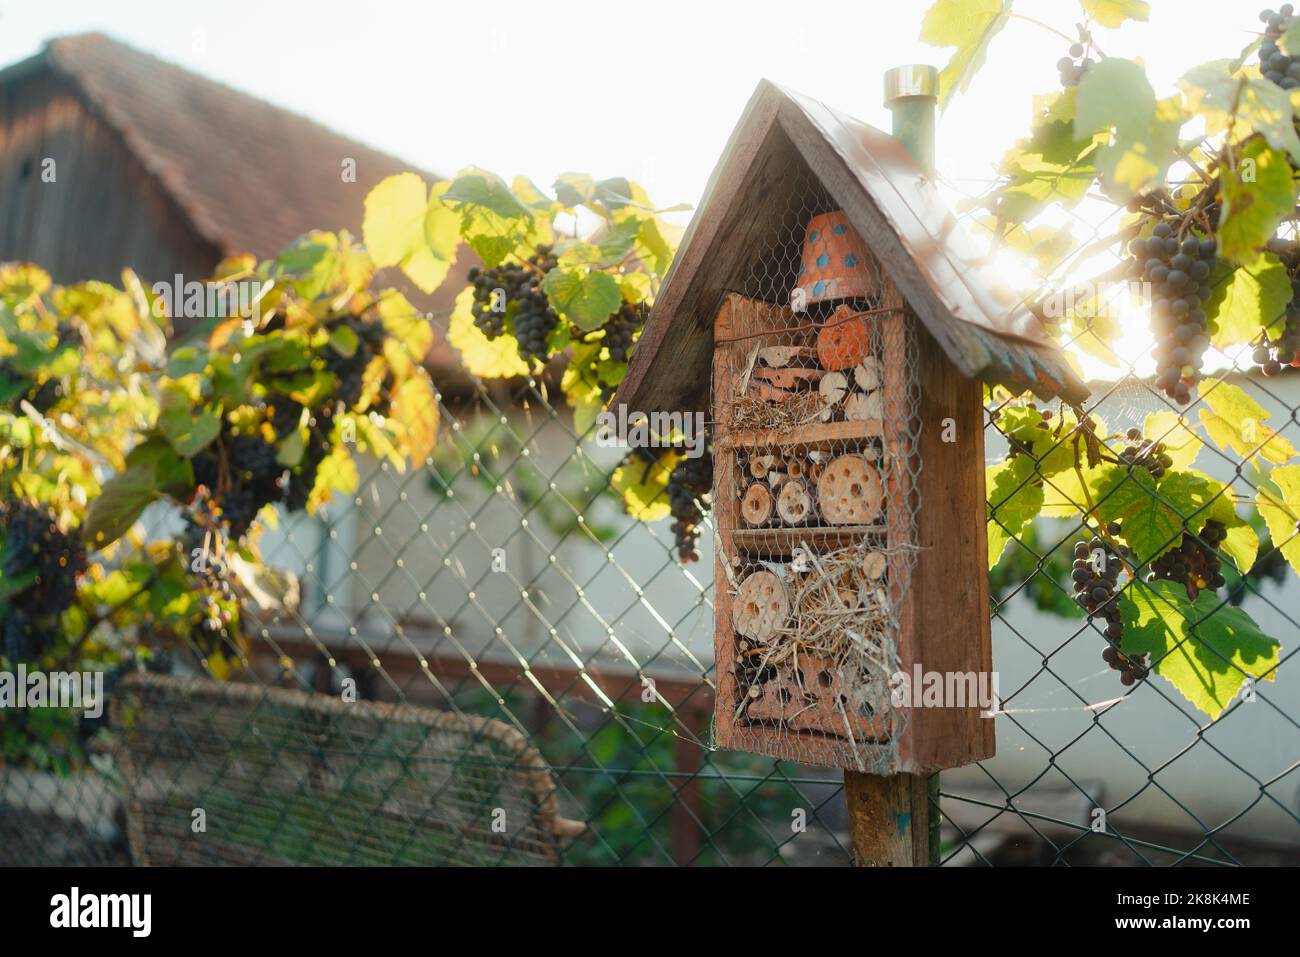 Insetto casa appesa in giardino, concetto di ecologia giardinaggio e stile di vita sostenibile. Foto Stock